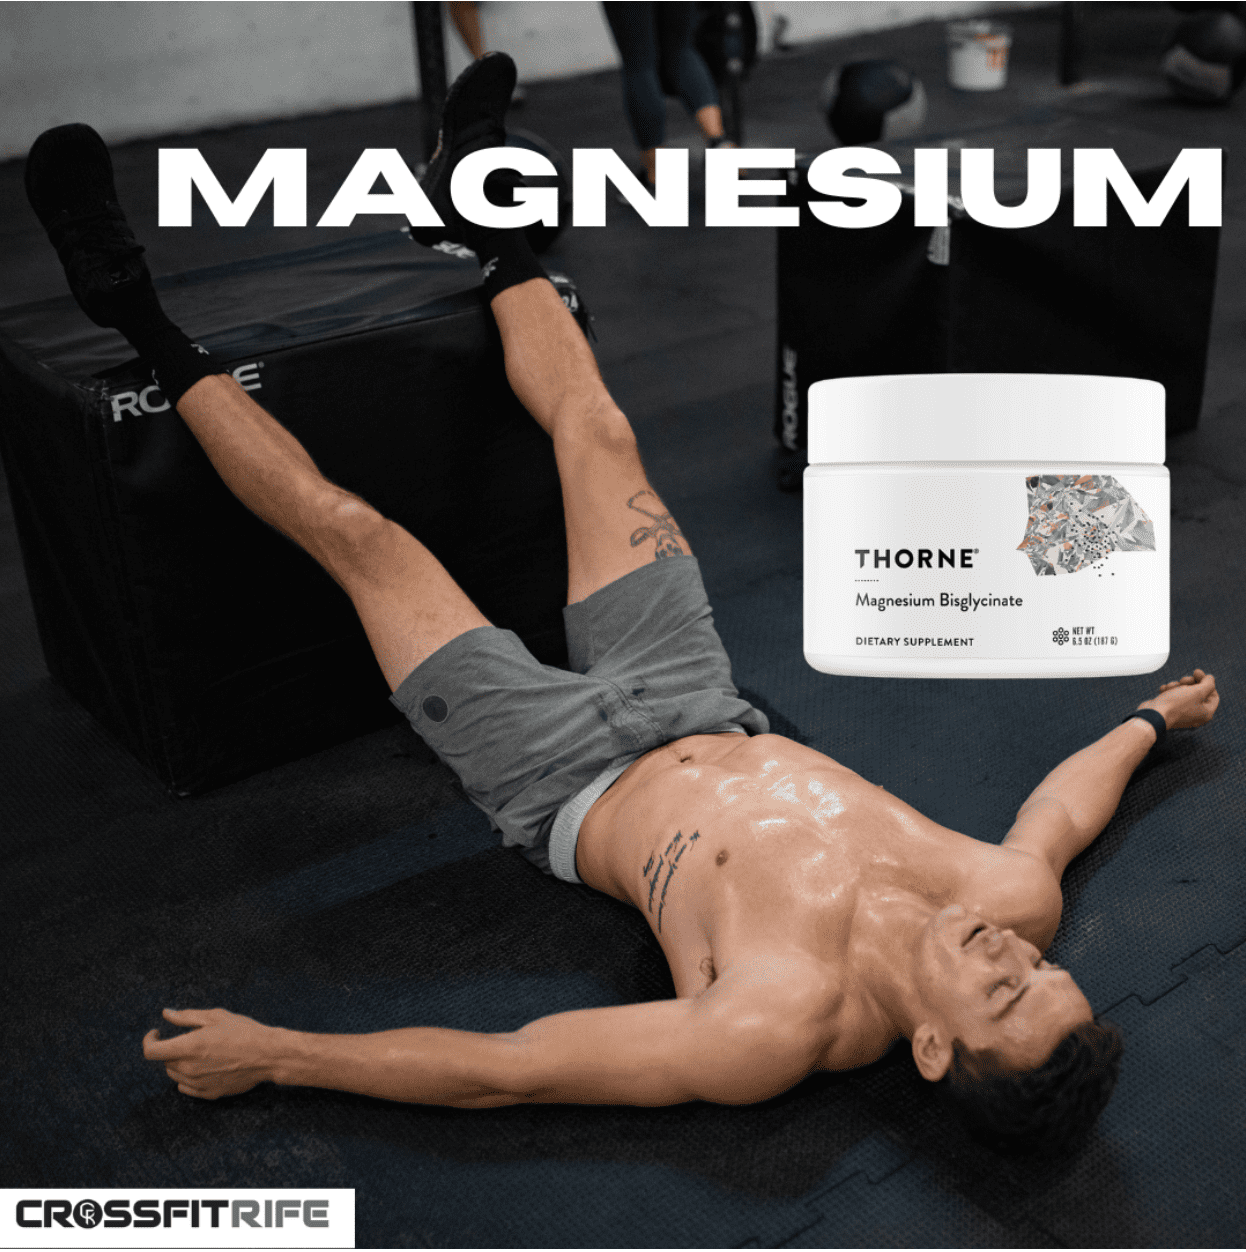 Magnesium The Super Supplement?